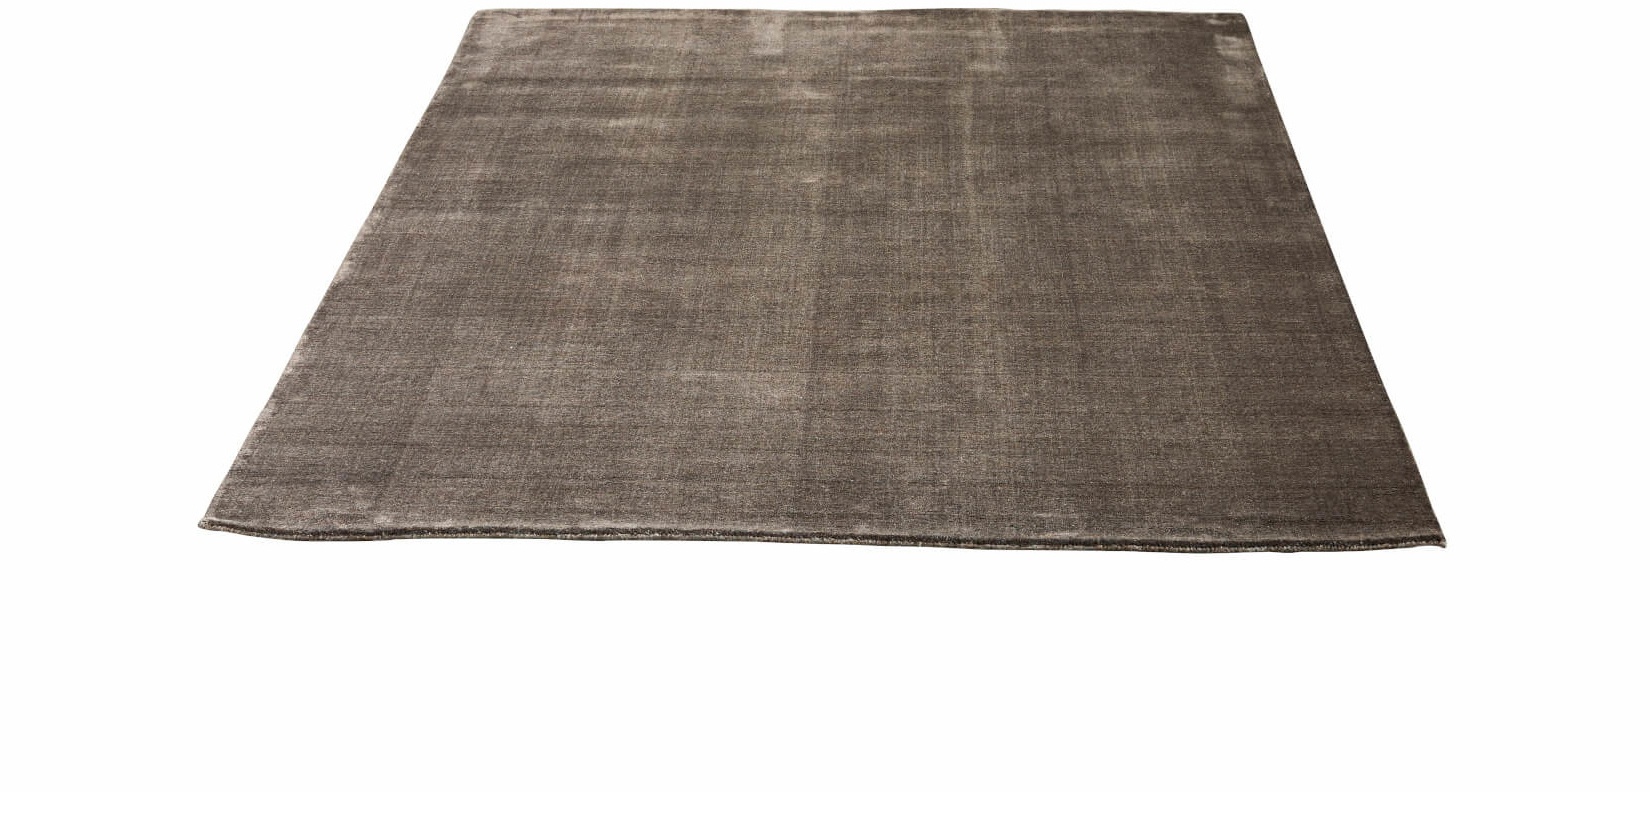 Earth Bamboo Teppich, 170 x 240 cm, wam grey